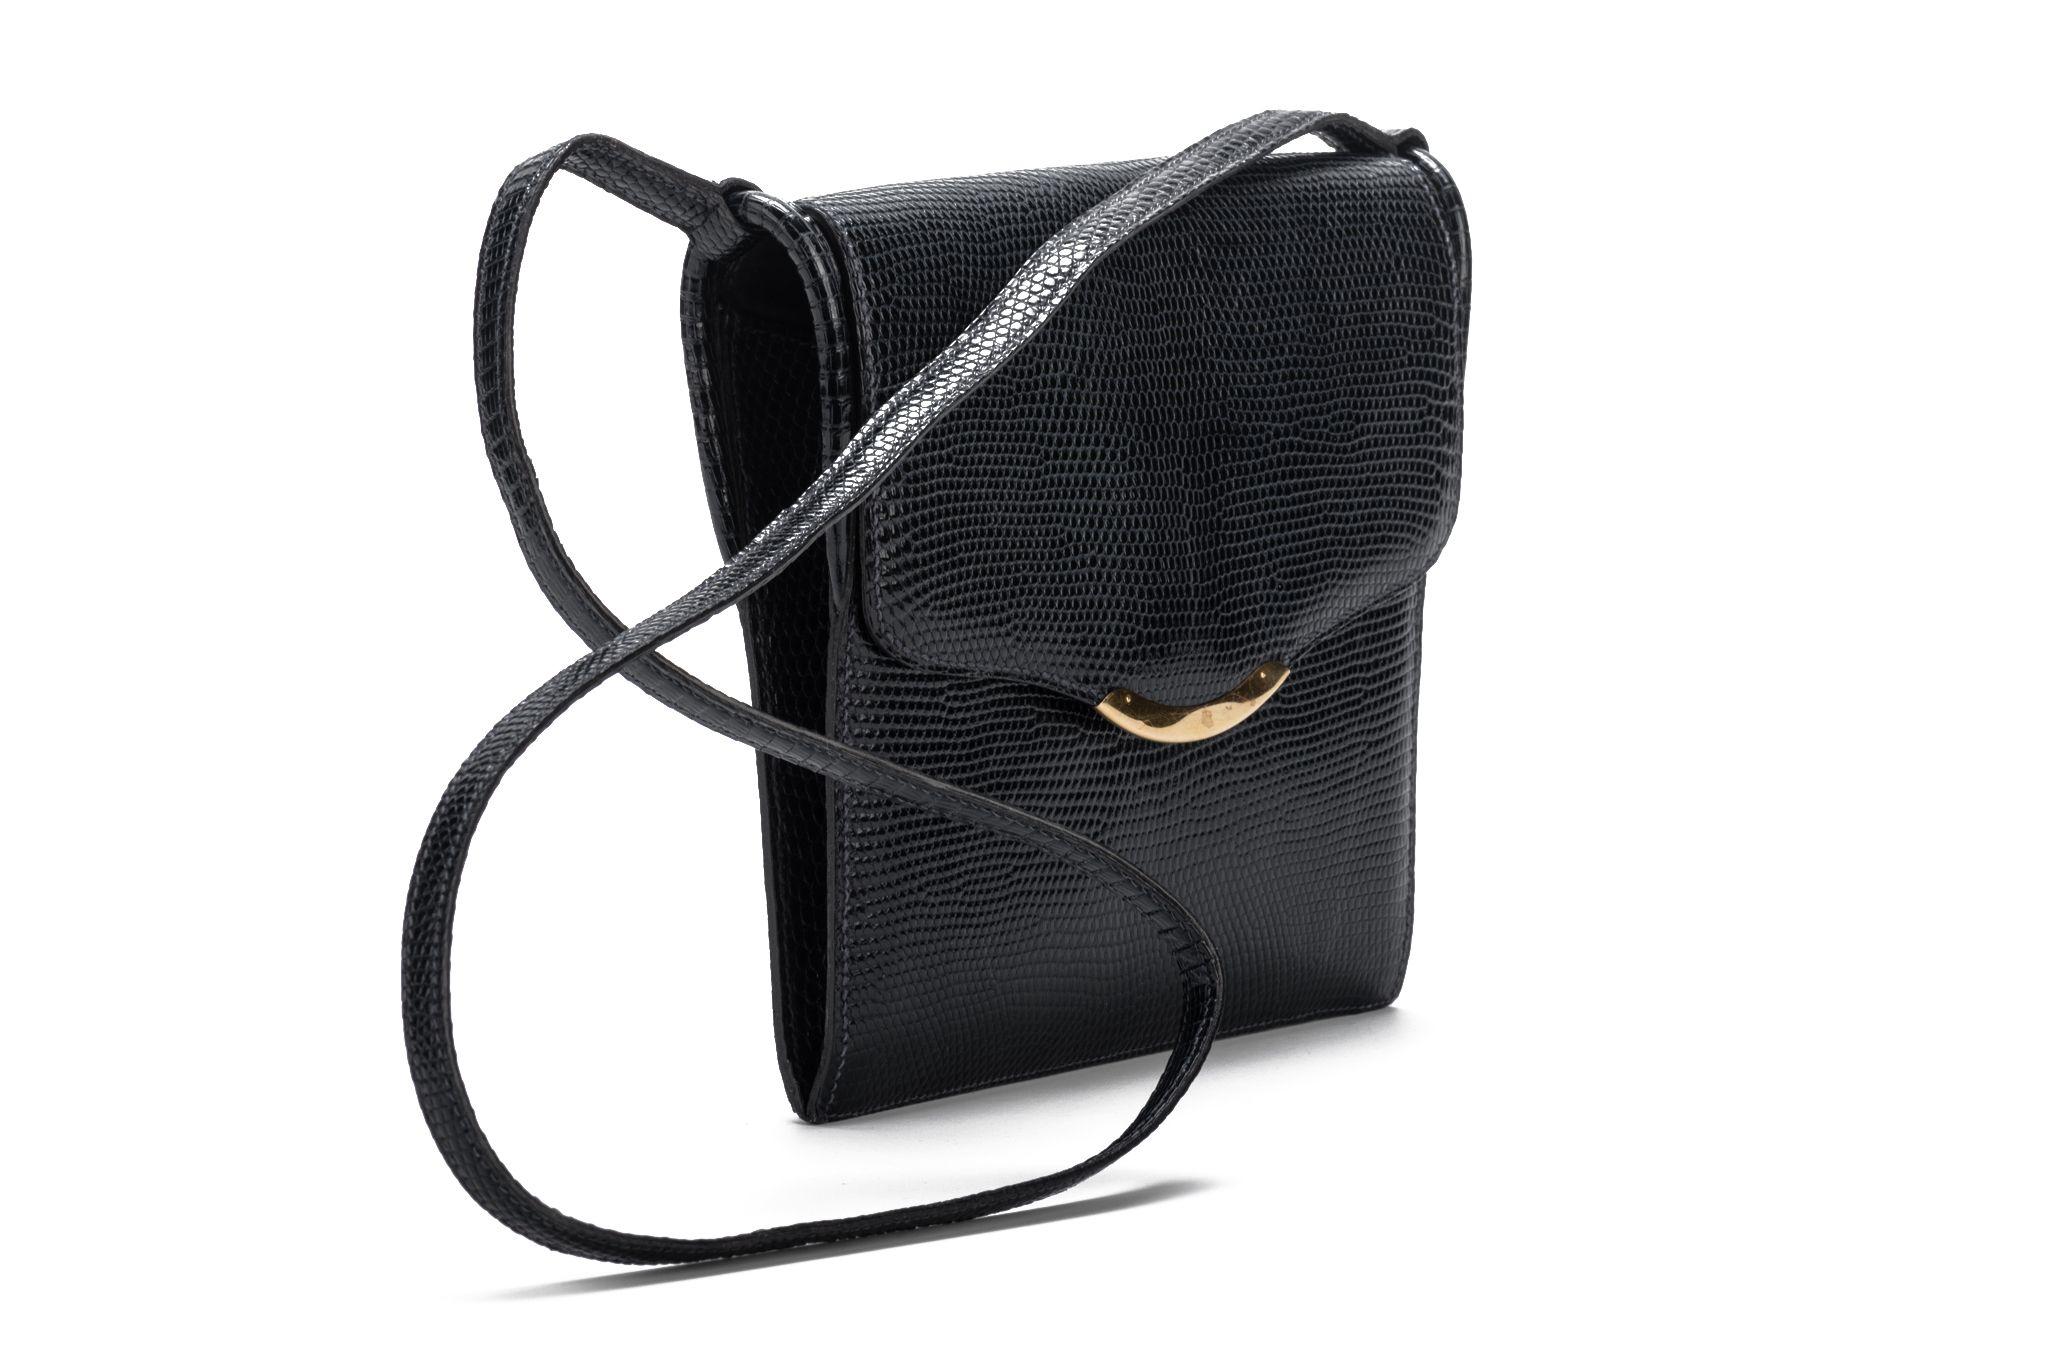 Hermes vintage black lizard shoulder bag with gold tone hardware. Shoulder drop 17